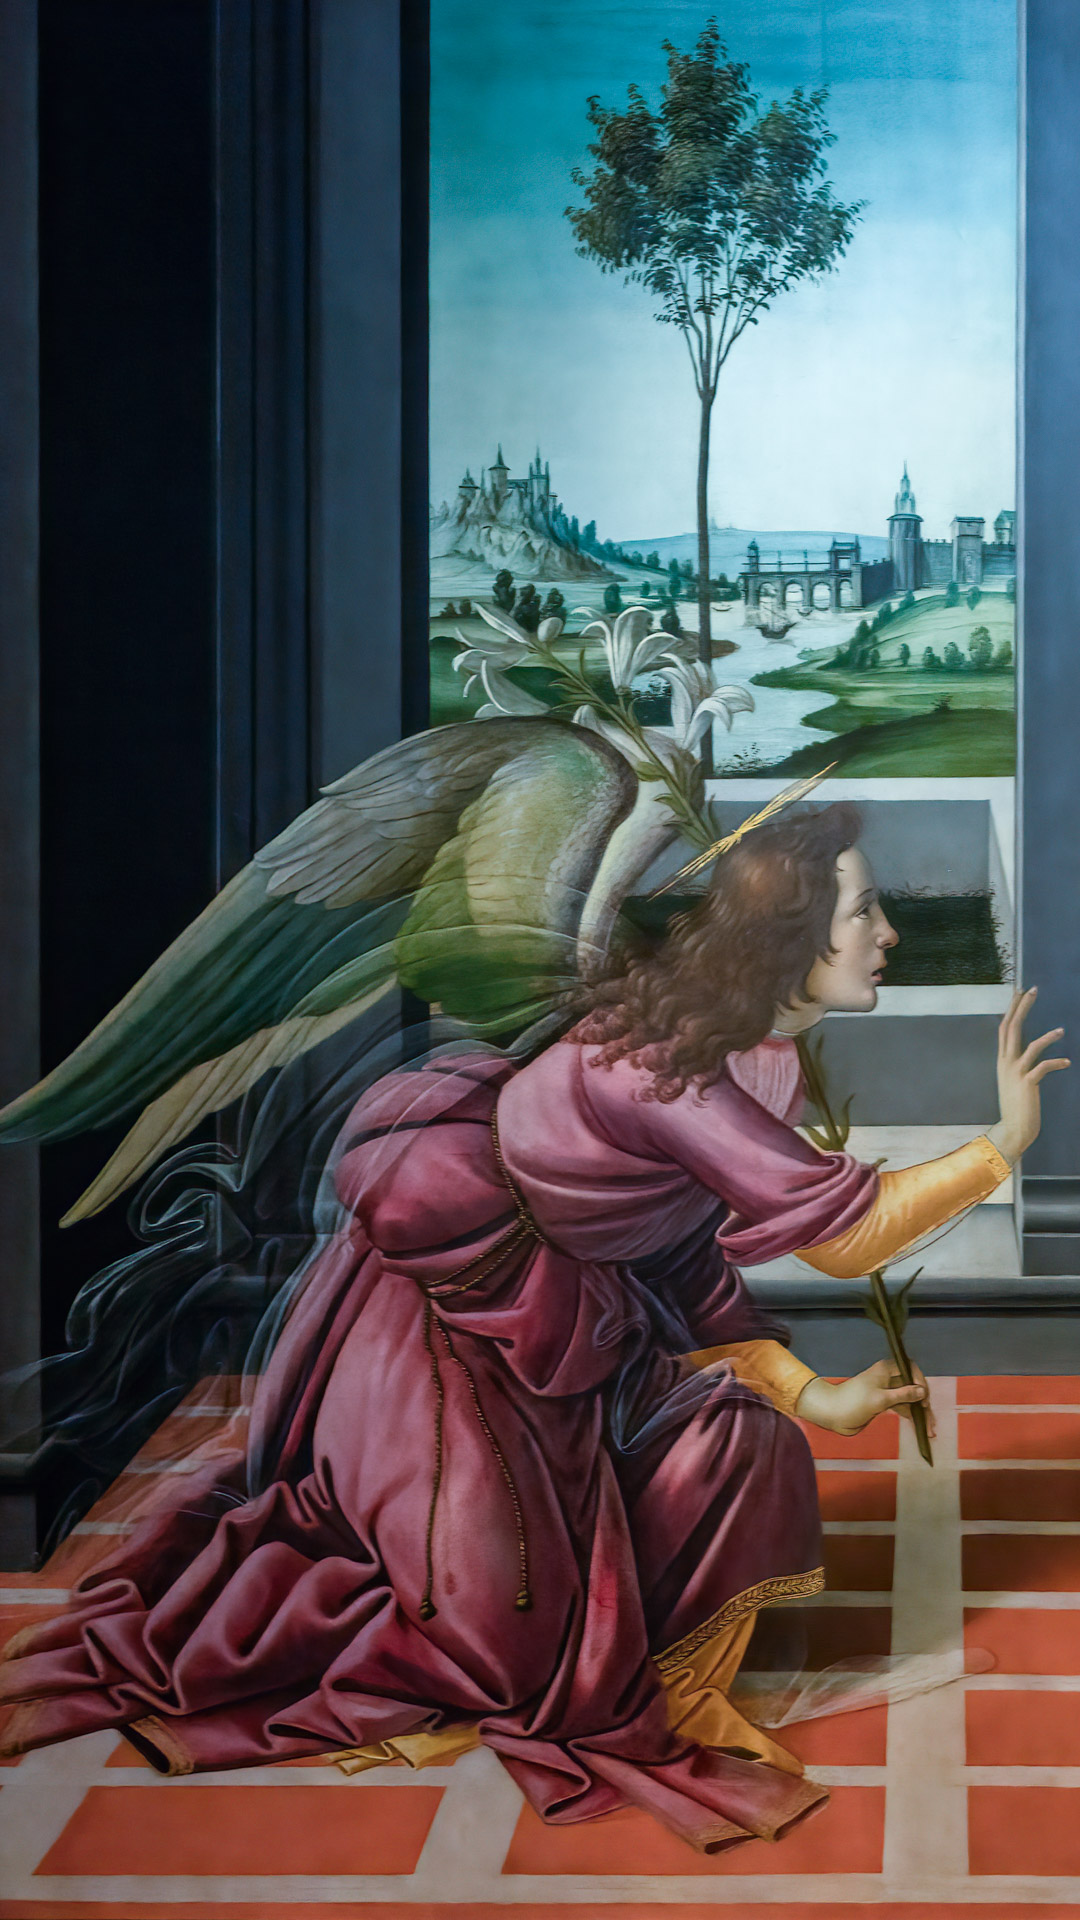 Découvrez la beauté éthérée des œuvres emblématiques de Botticelli, ornant votre iPhone avec une élégance intemporelle.